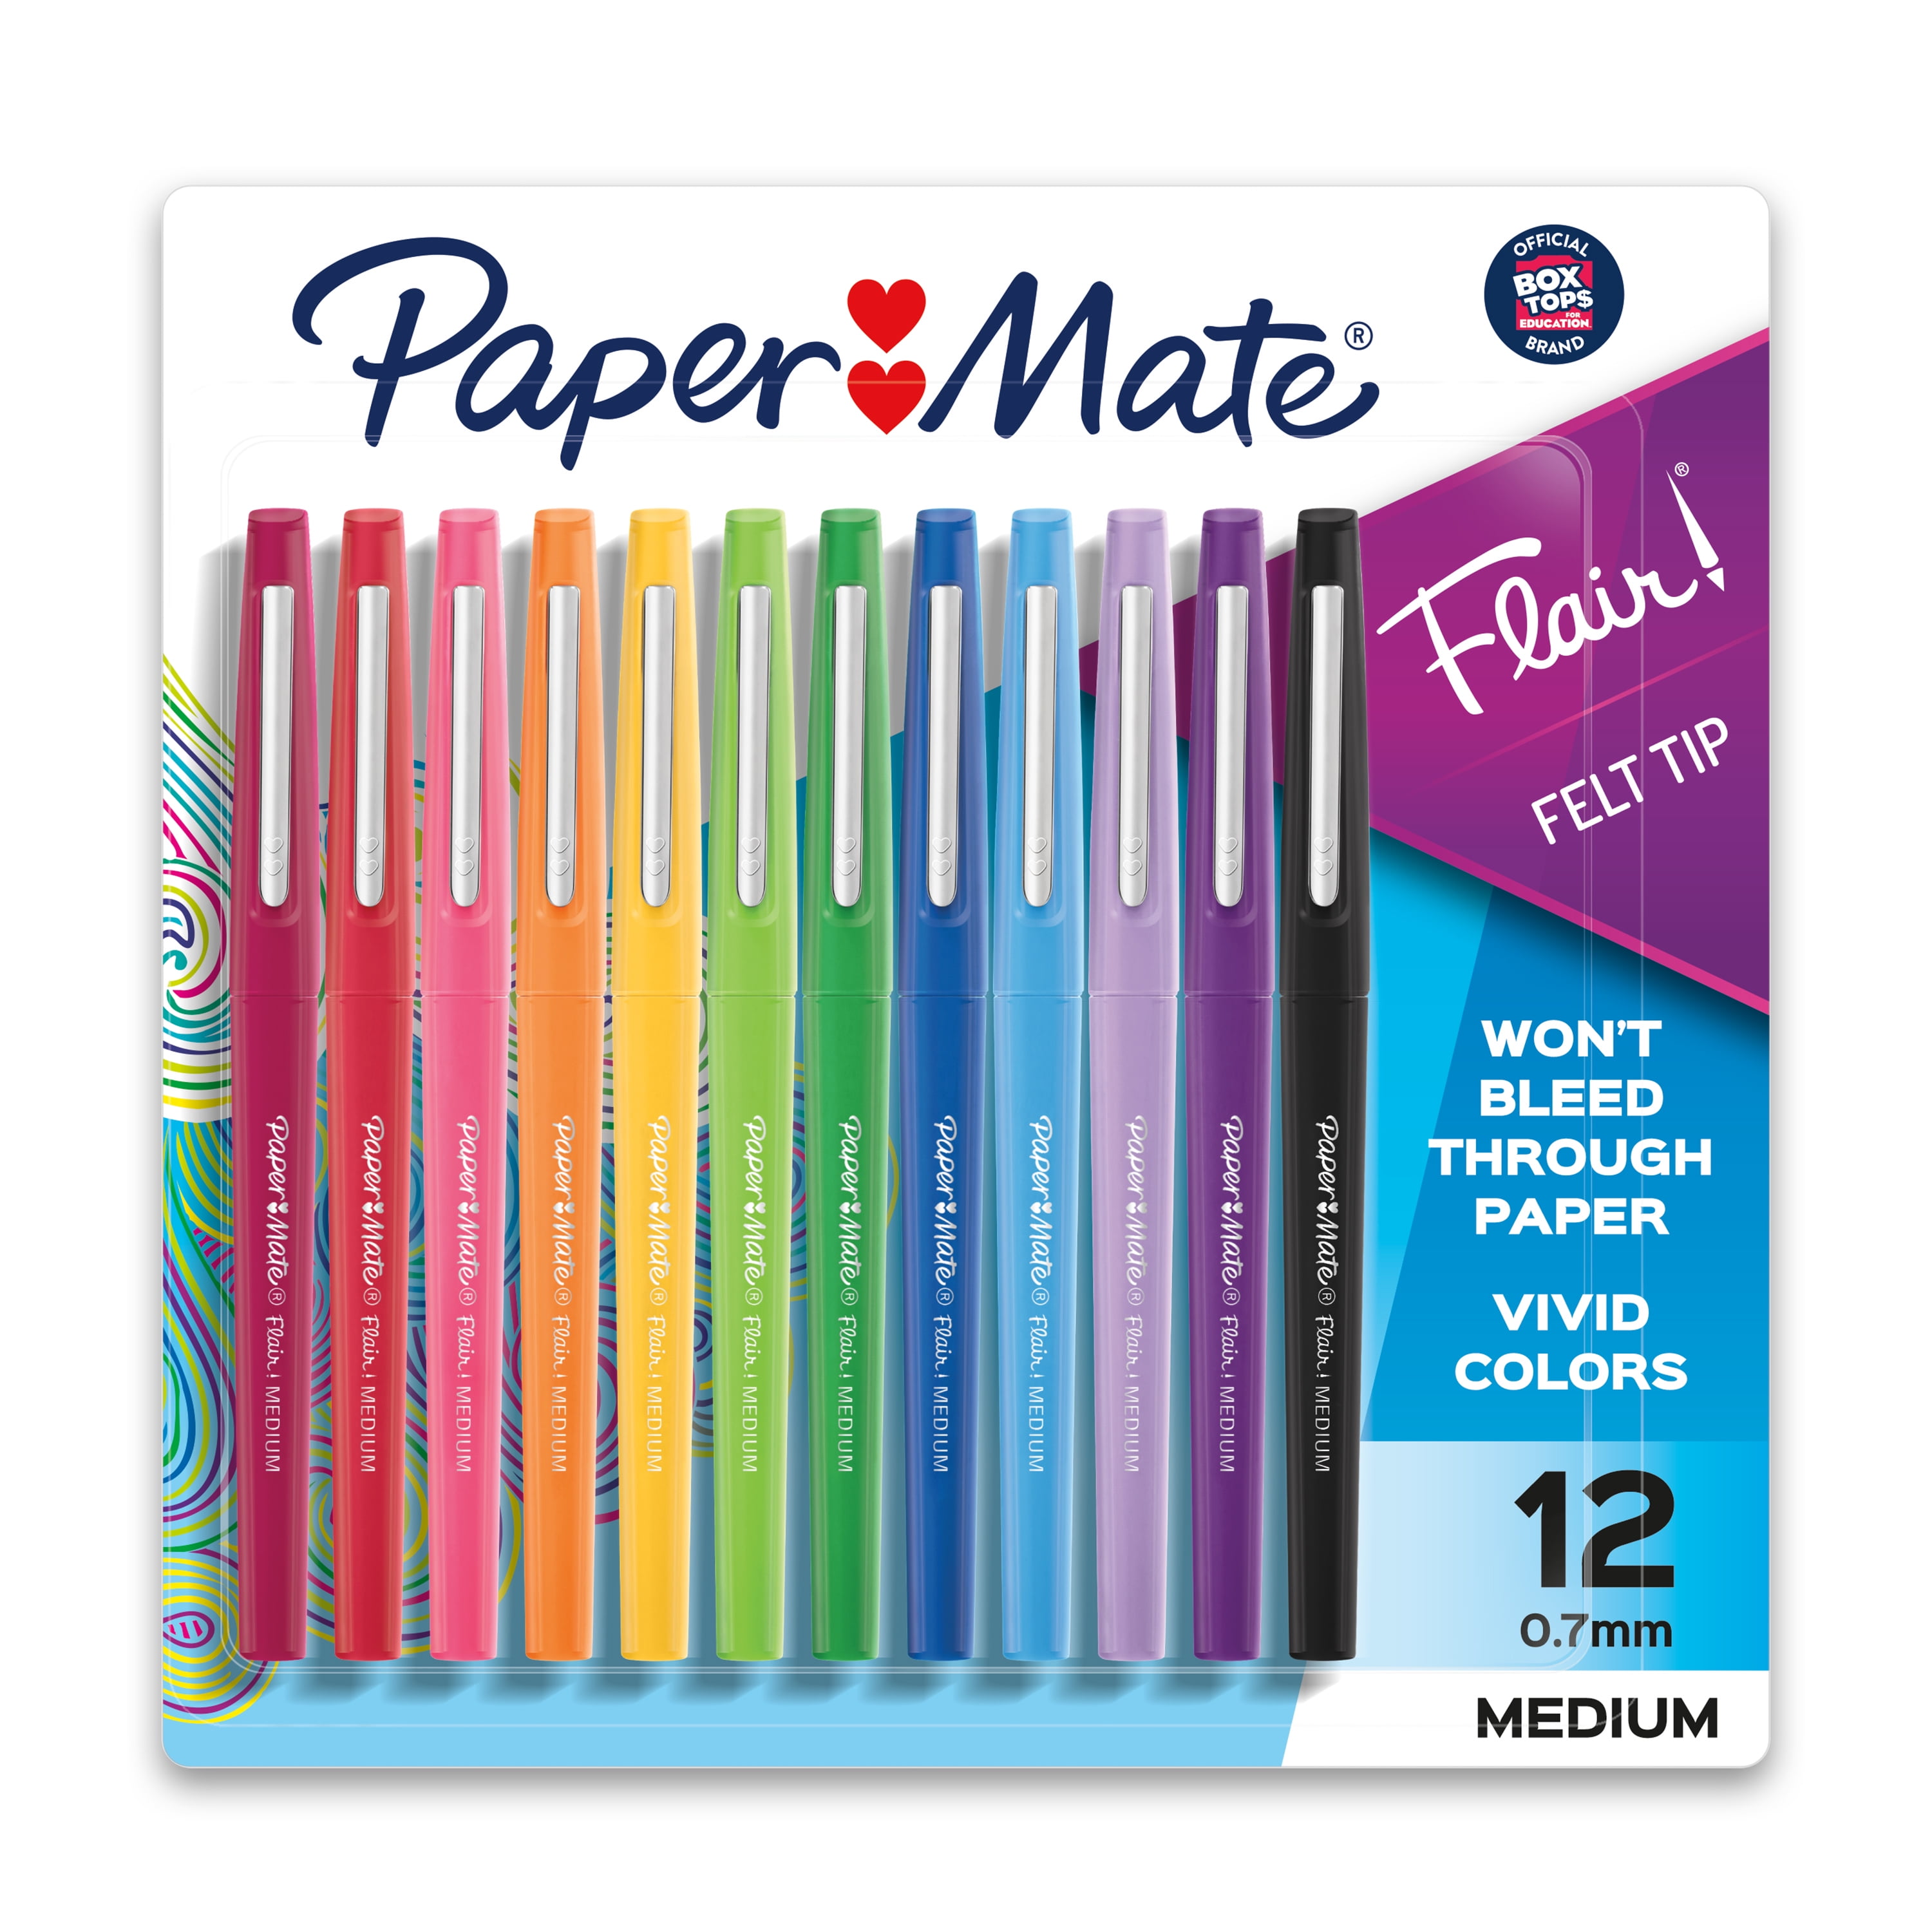 pastel Bestuurbaar genezen Paper Mate Flair Felt Tip Pen Set, 0.7mm, 12 Count - Walmart.com